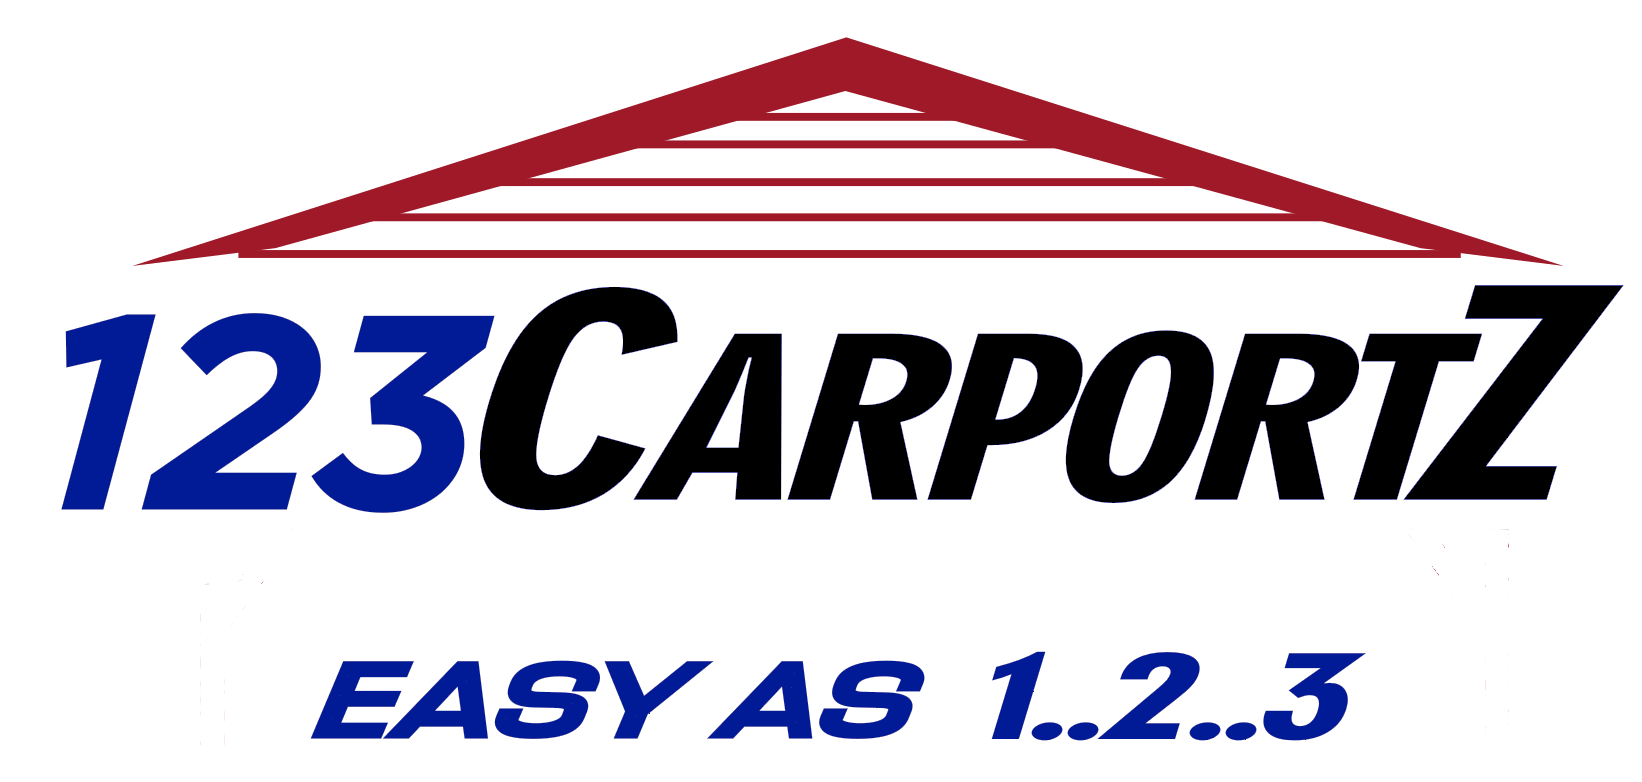 123 Carportz logo